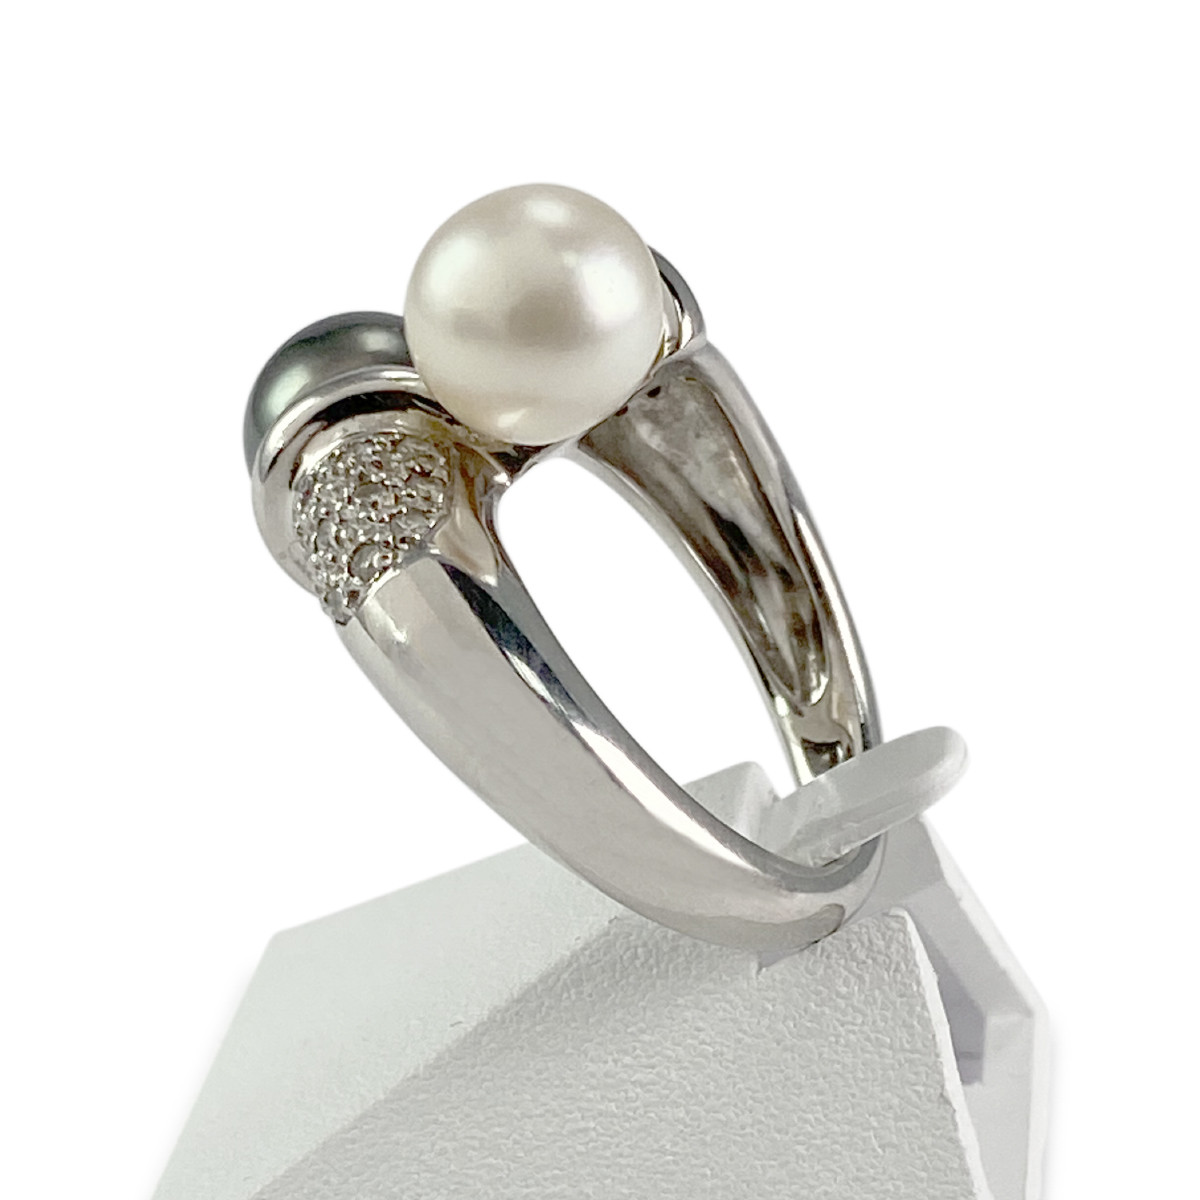 Bague d'occasion or 750 blanc perle de culture diamants - vue 2